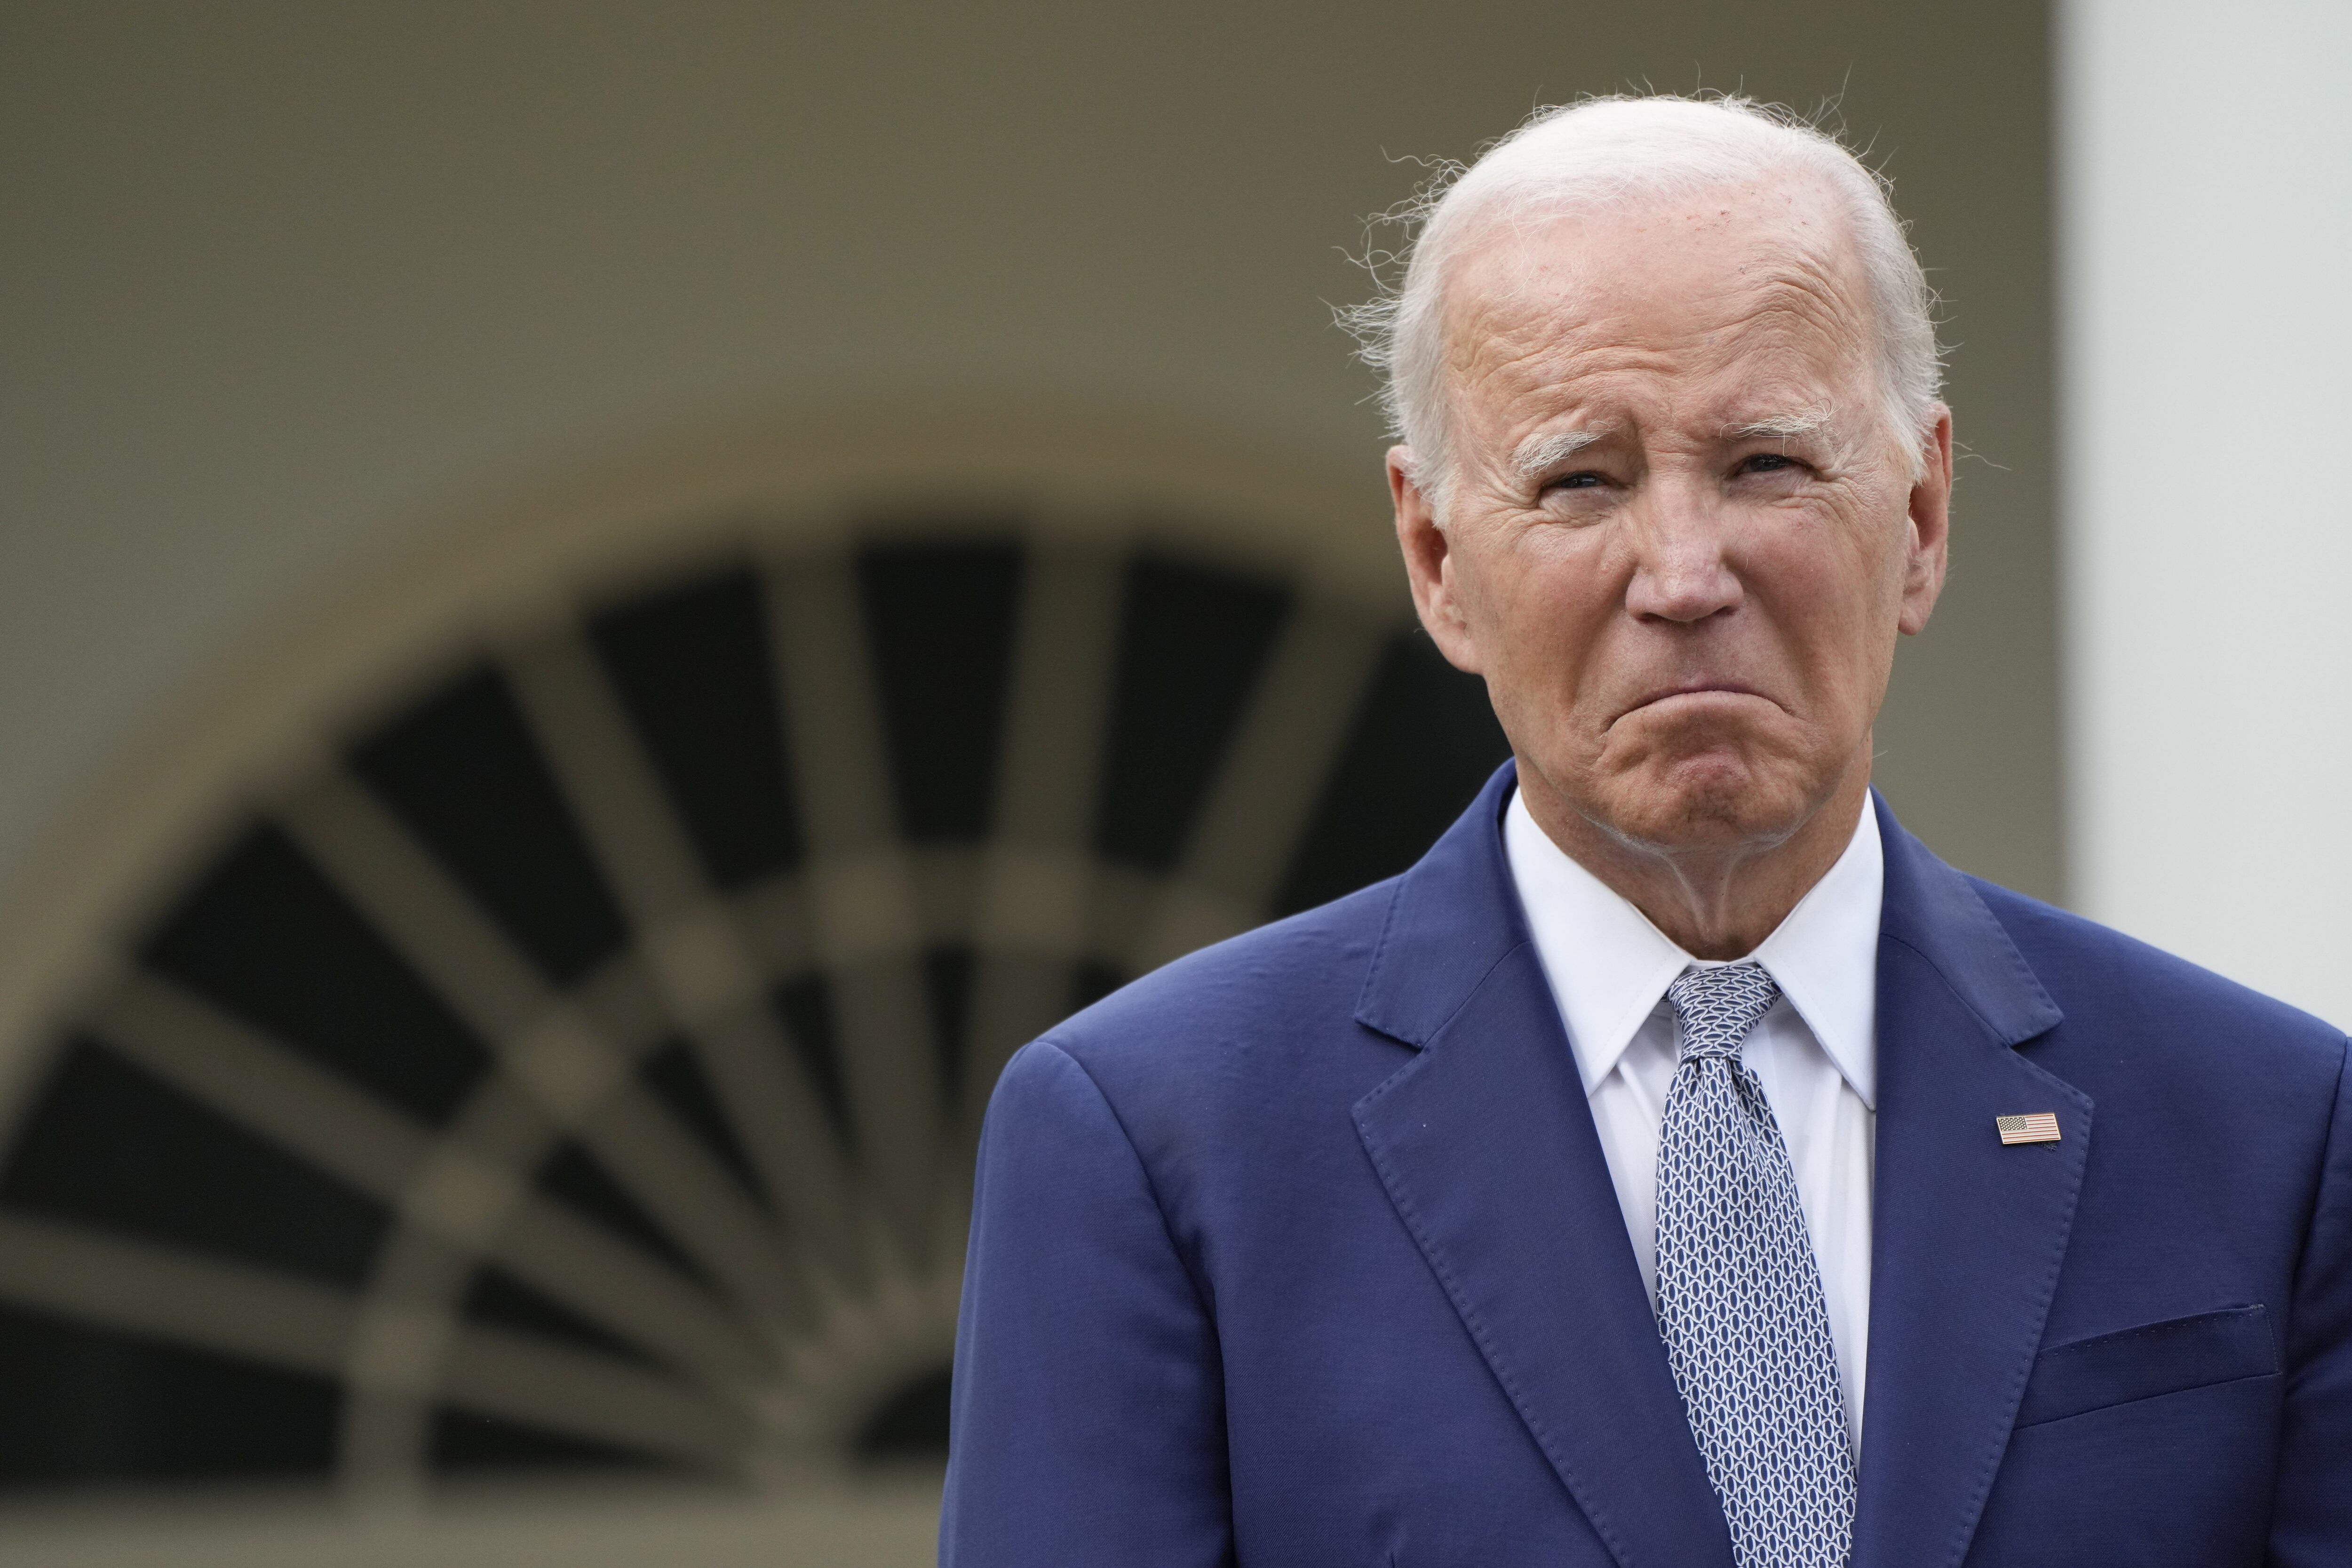 El debate sobre la vejez de Biden en la carrera por la Casa Blanca se intensifica e inquieta a los demócratas